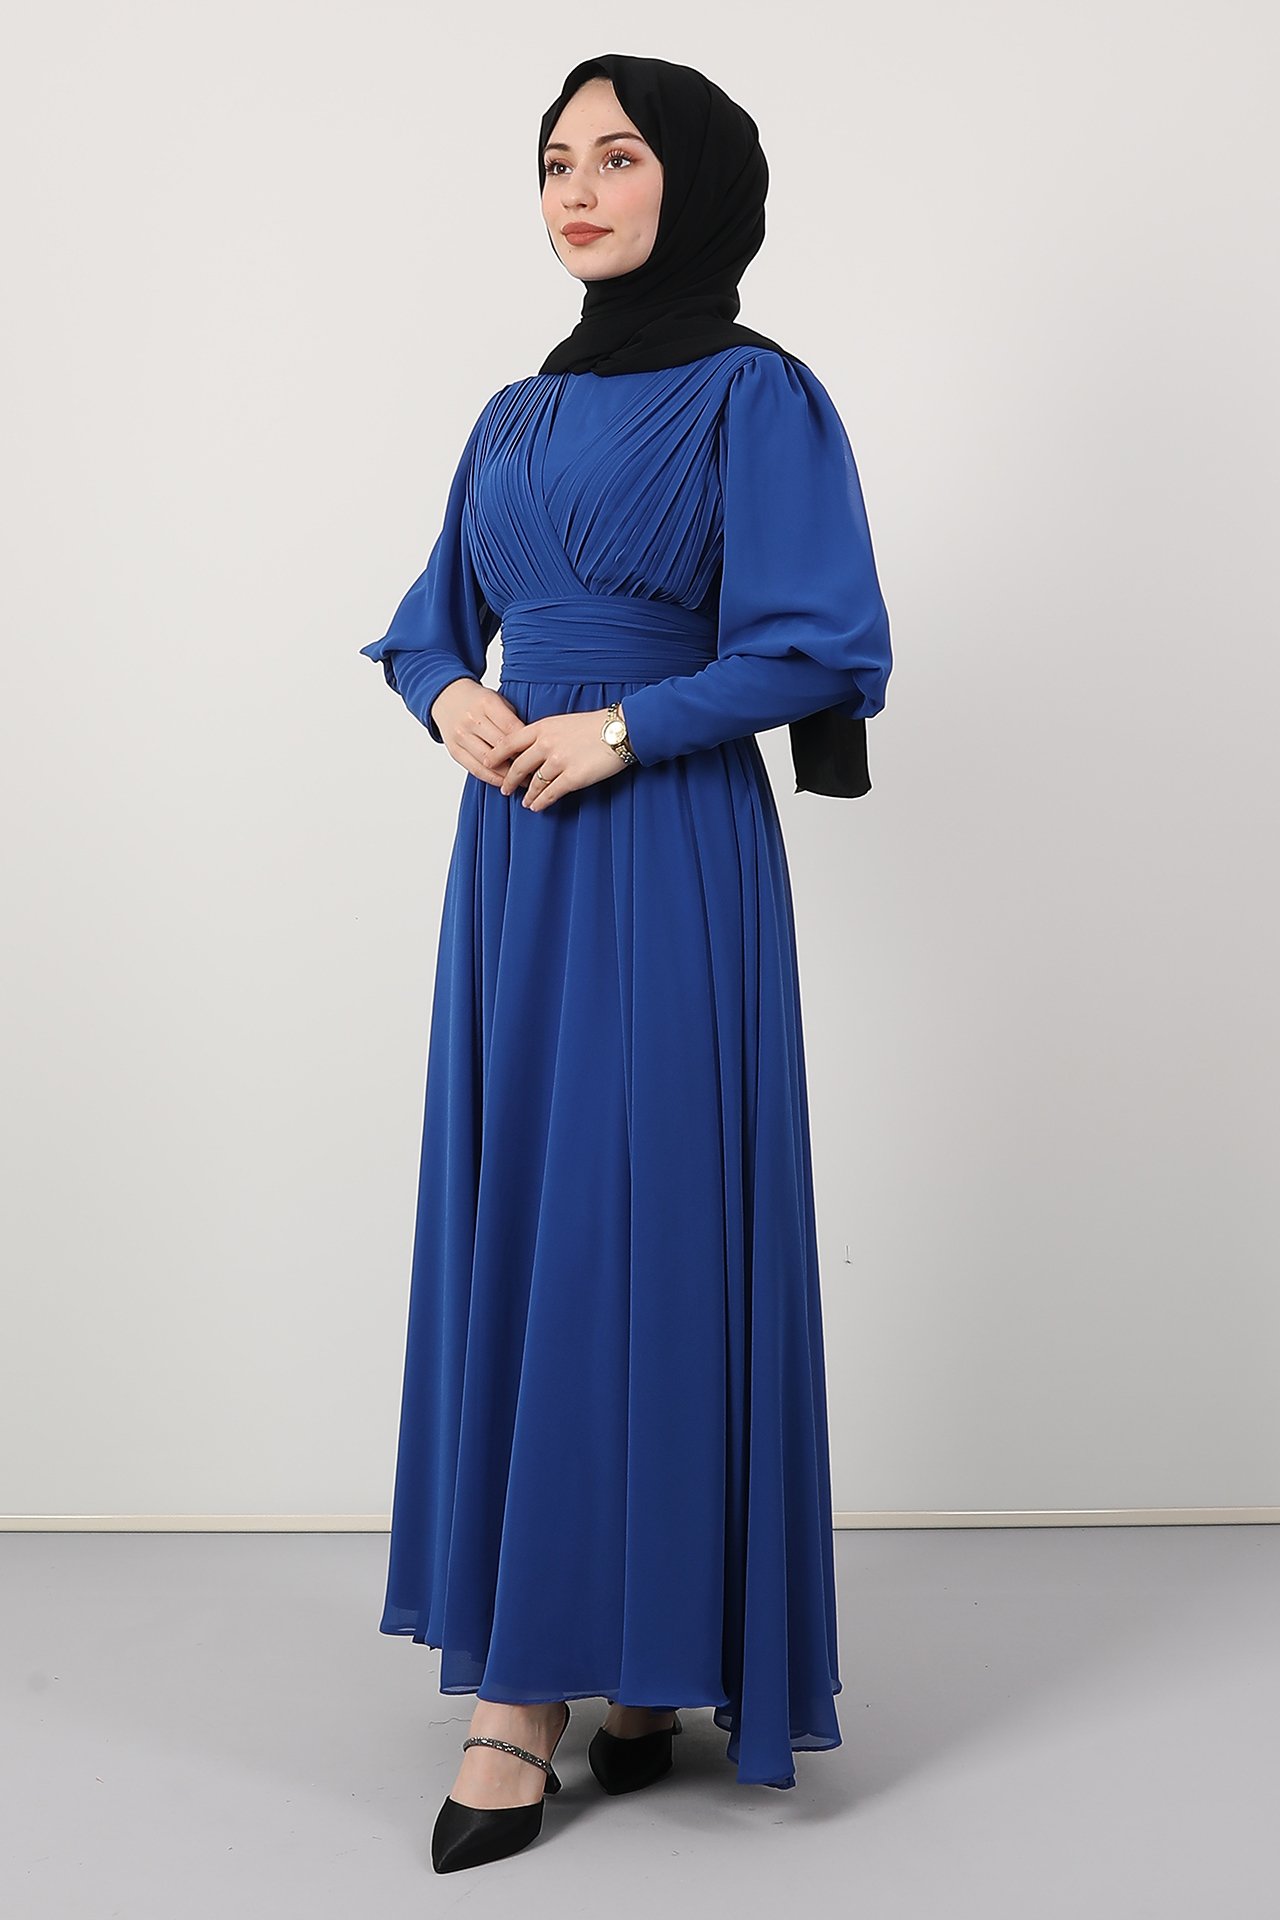 GİZAGİYİM - Kol Manşetli Piliseli Elbise Gece Mavi